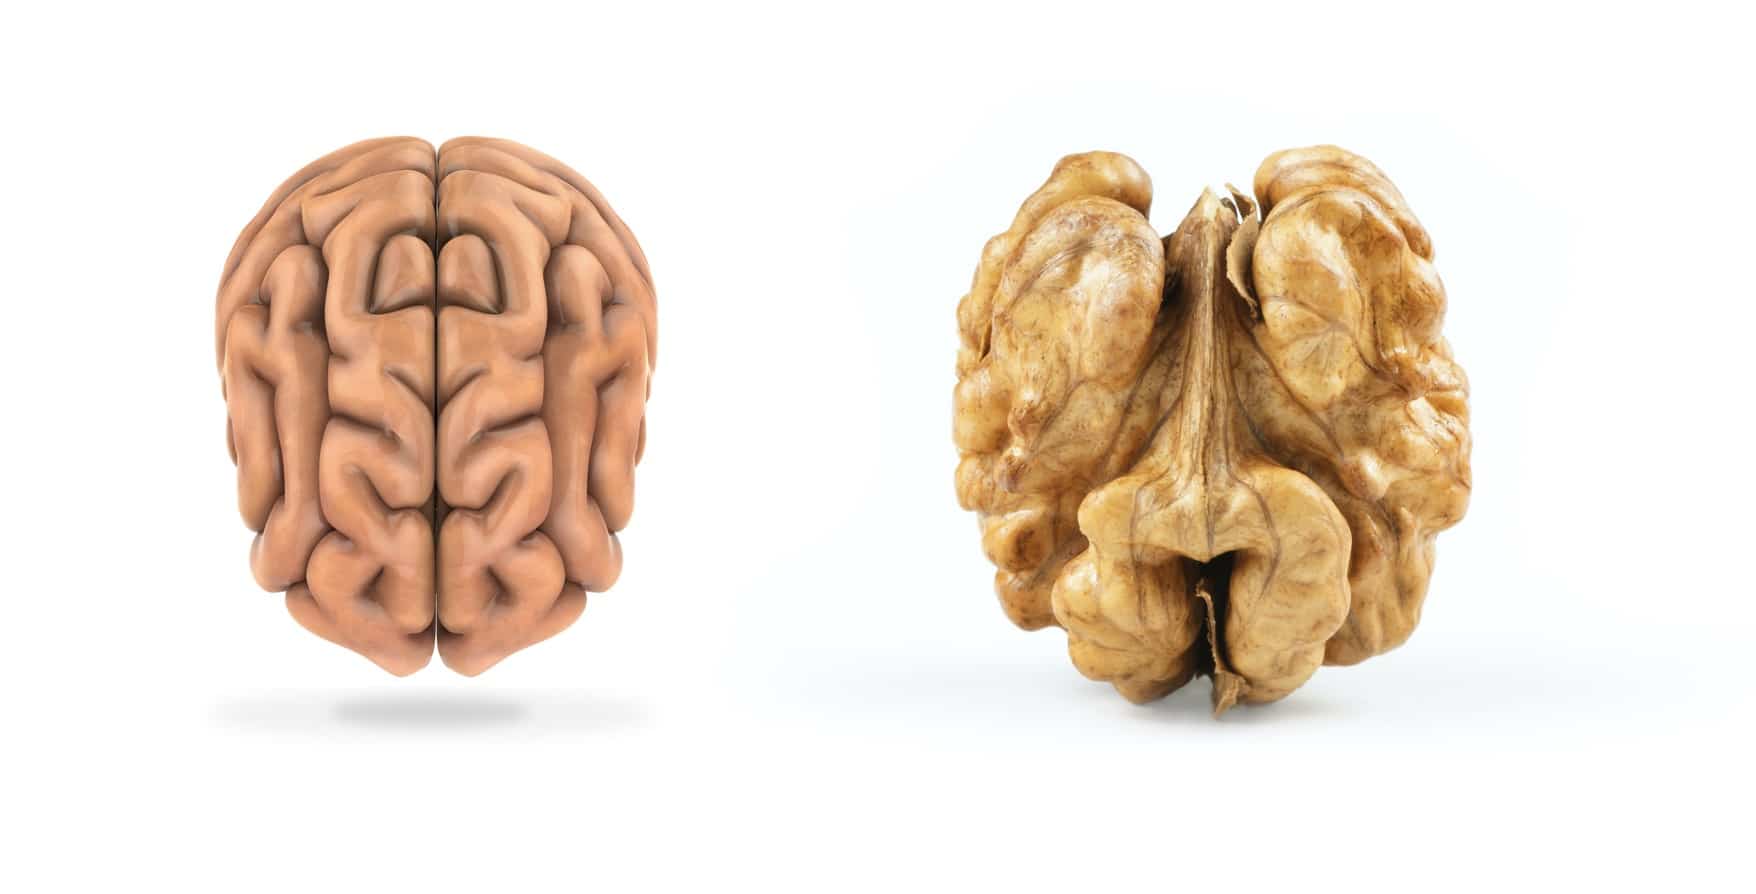 UX Design Comportemental, le cerveau ressemble à une noix